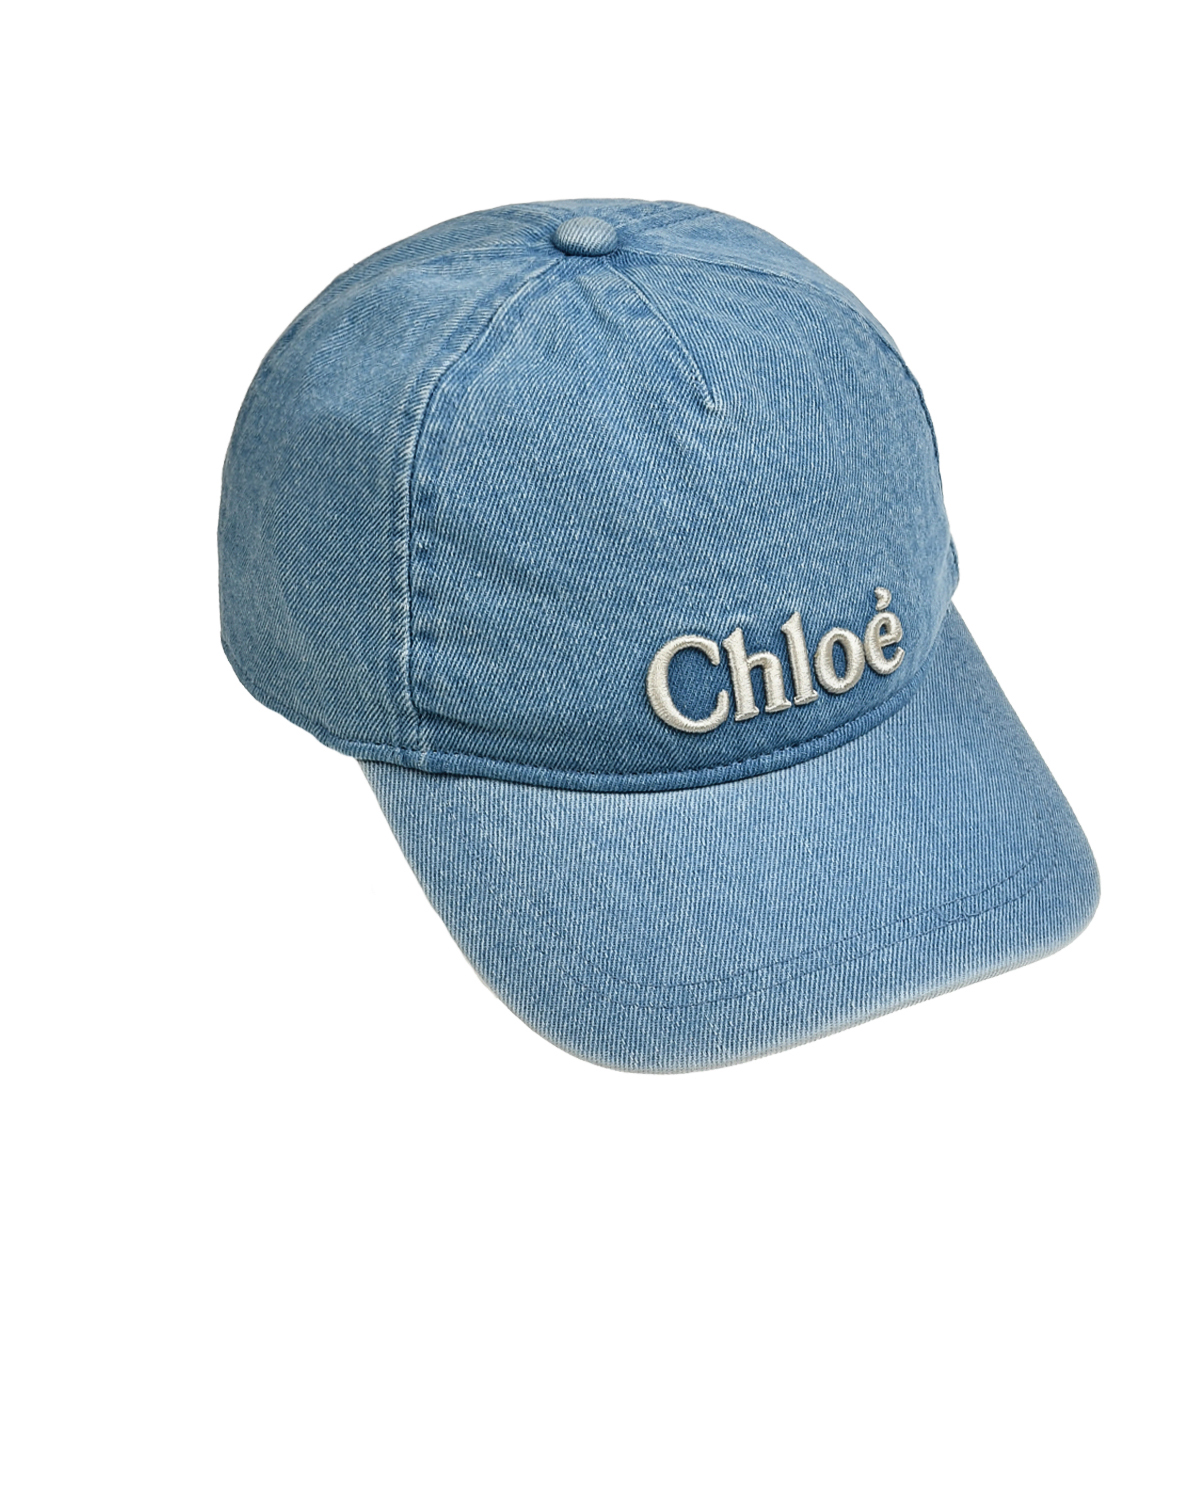 Бейсболка деним с белым логотипом, голубая Chloe, размер 56, цвет нет цвета - фото 1